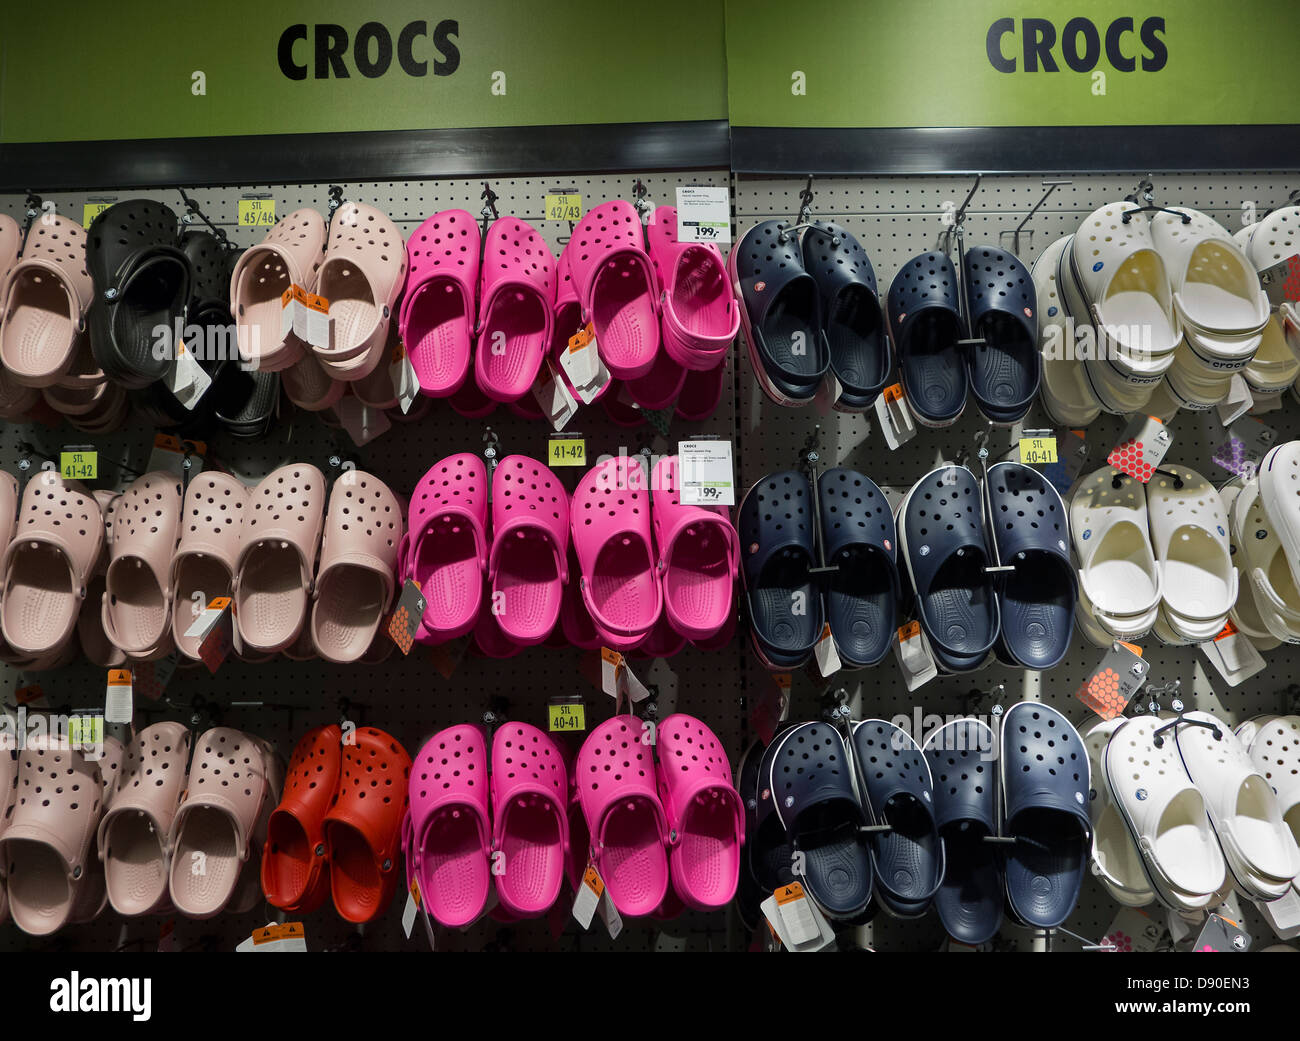 ongebruikt Sortie Bedankt Crocs shoes on display stand in a footwear shop Stock Photo - Alamy